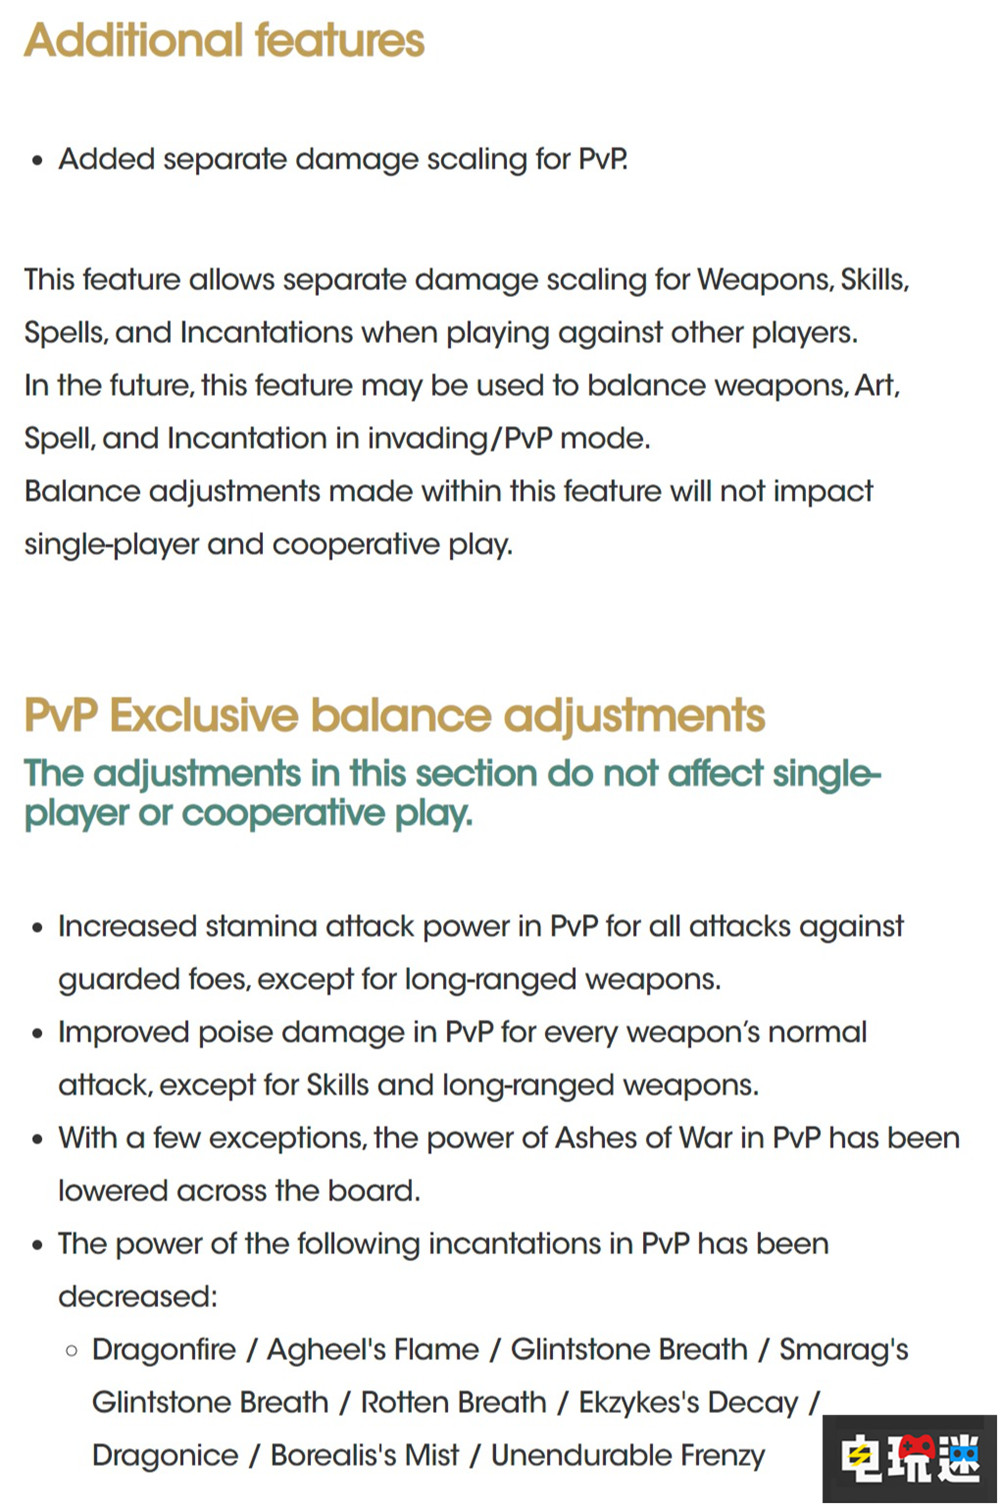 《艾尔登法环》1.07更新将PVP与PVE拆分 光追与新地图暗藏其中 光追 DLC 老头环 单机联机 PVP 艾尔登法环 电玩迷资讯  第3张